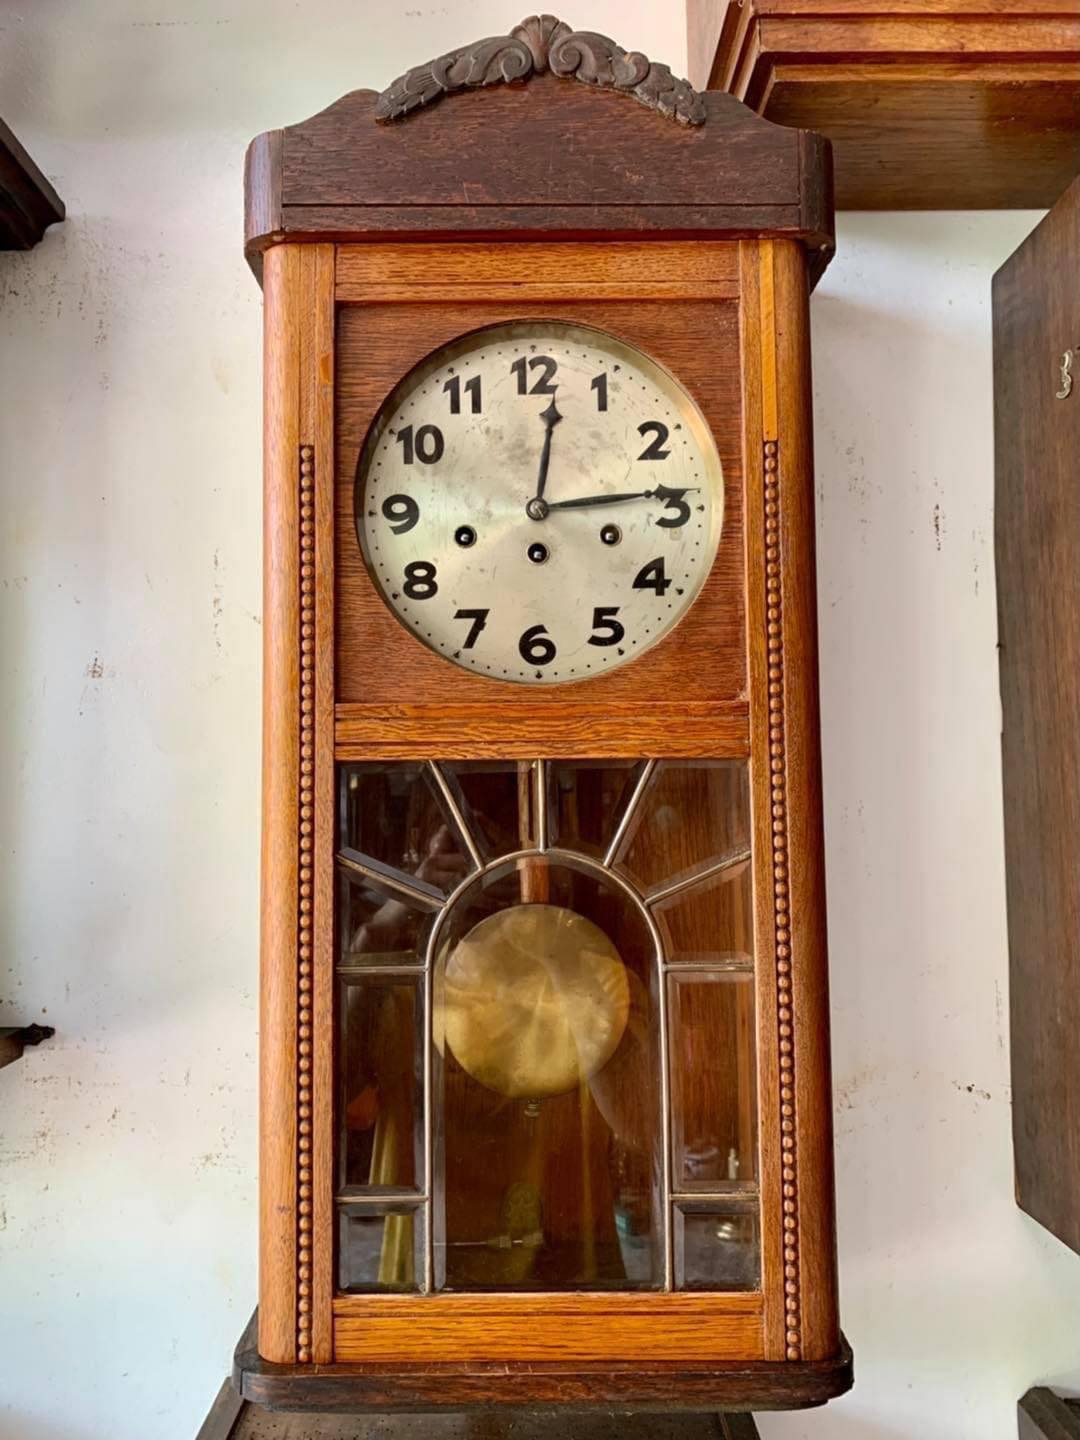 60cm Vòng im lặng Đồng hồ treo tường phong cách cổ điển Đồng hồ báo thức  cho trang trí nhà bếp Phòng ngủ phòng khách | Lazada.vn